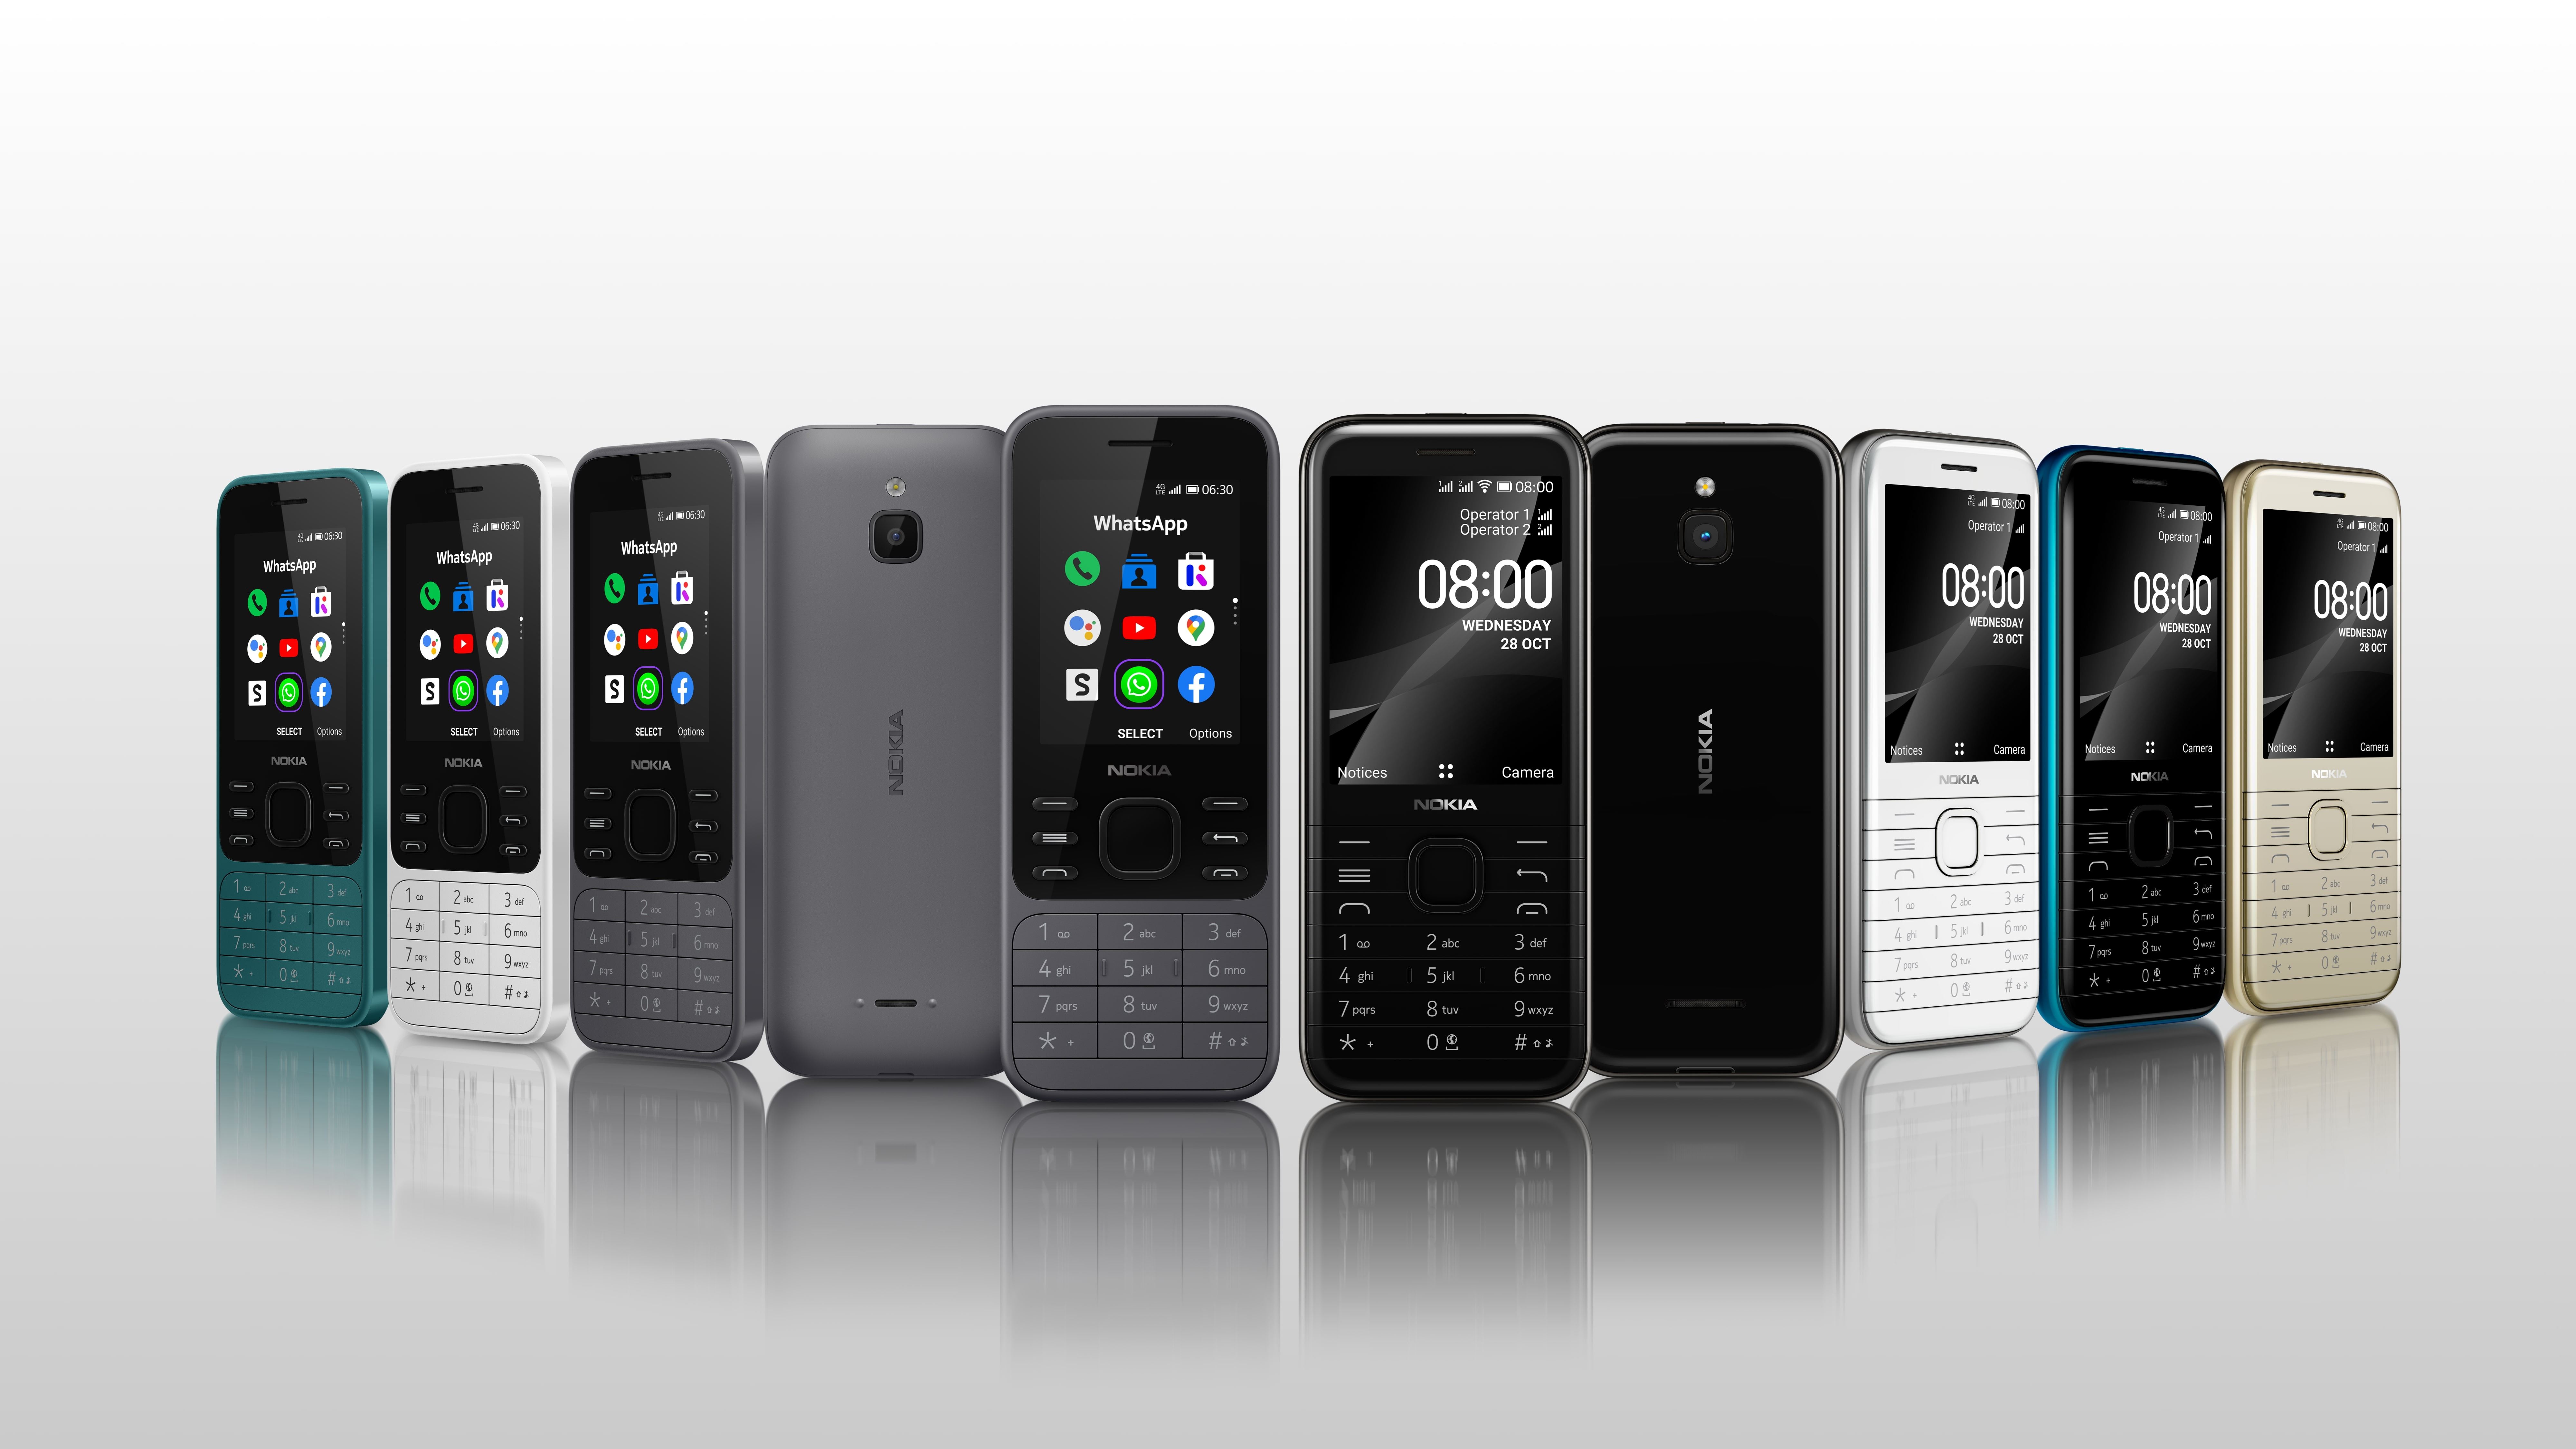 Модели телефонов нокиа кнопочные фото. Nokia 8000 4g. Nokia 6300 4g 2021. Nokia 6300 4g и Nokia 8000 4g. Nokia 8000 (Black).